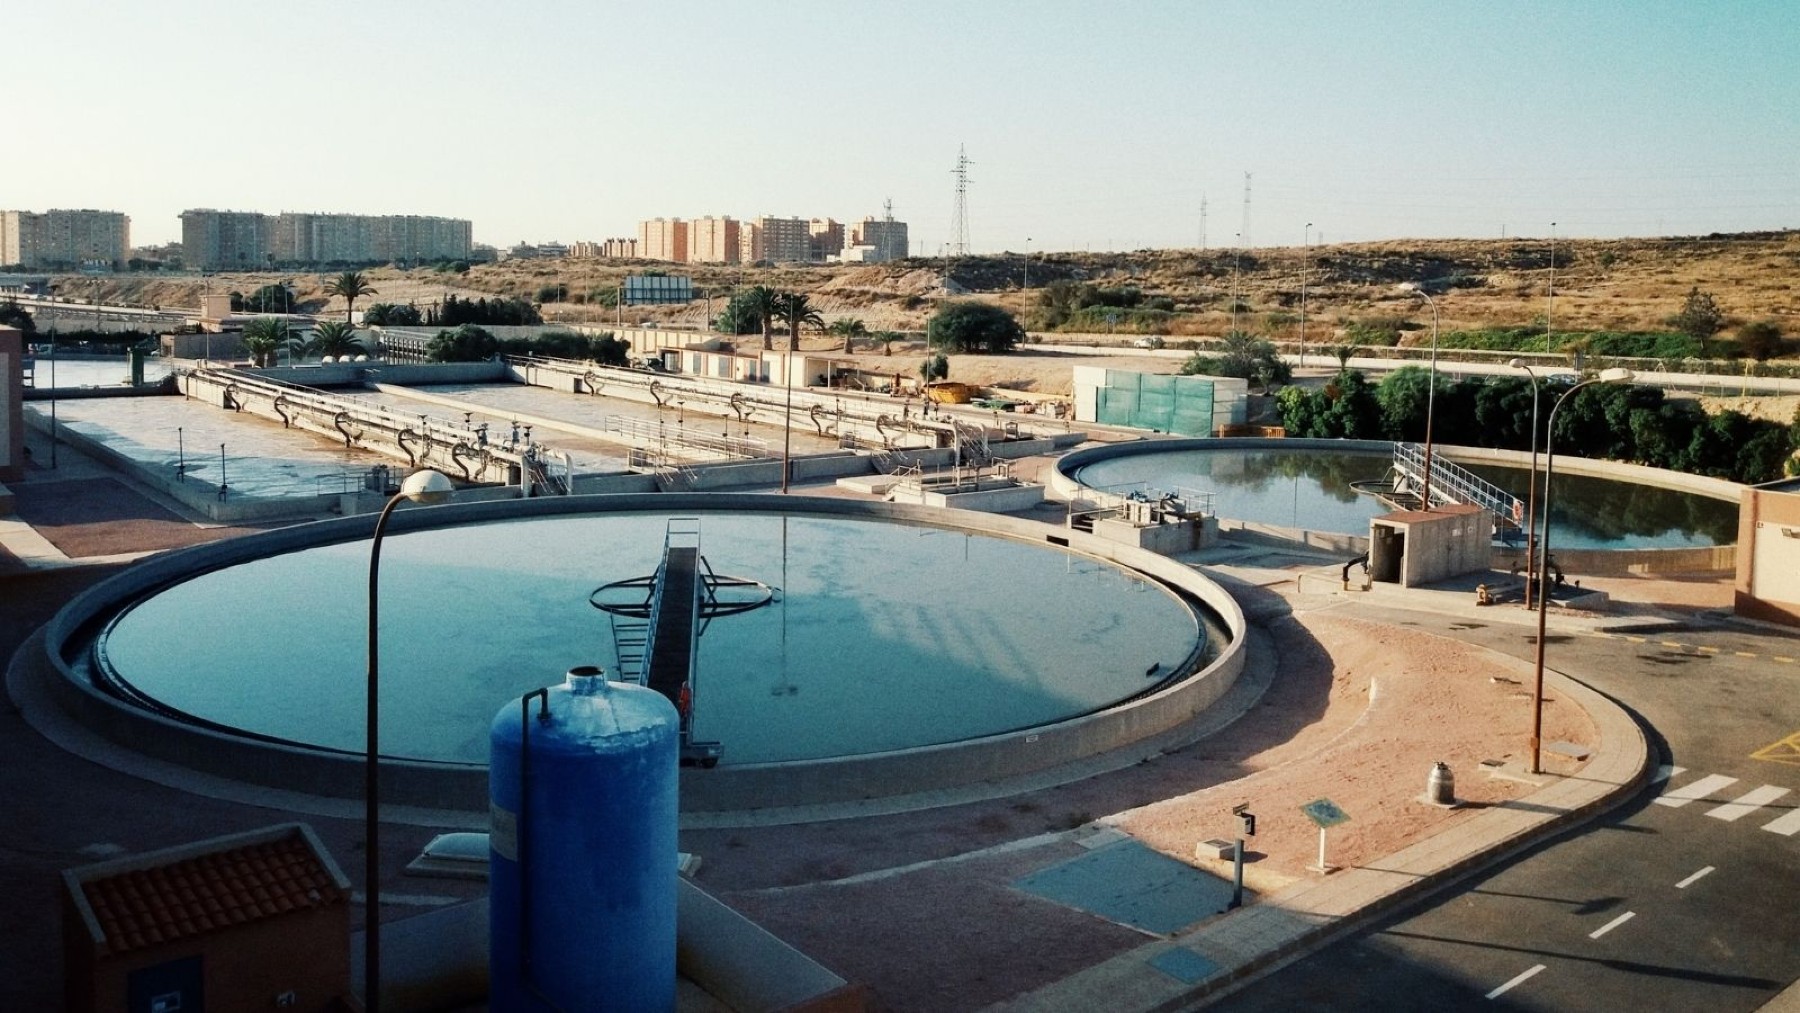 Depuradora de Rincón de León en Alicante (proyecto ‘Alicante Agua Circular’)